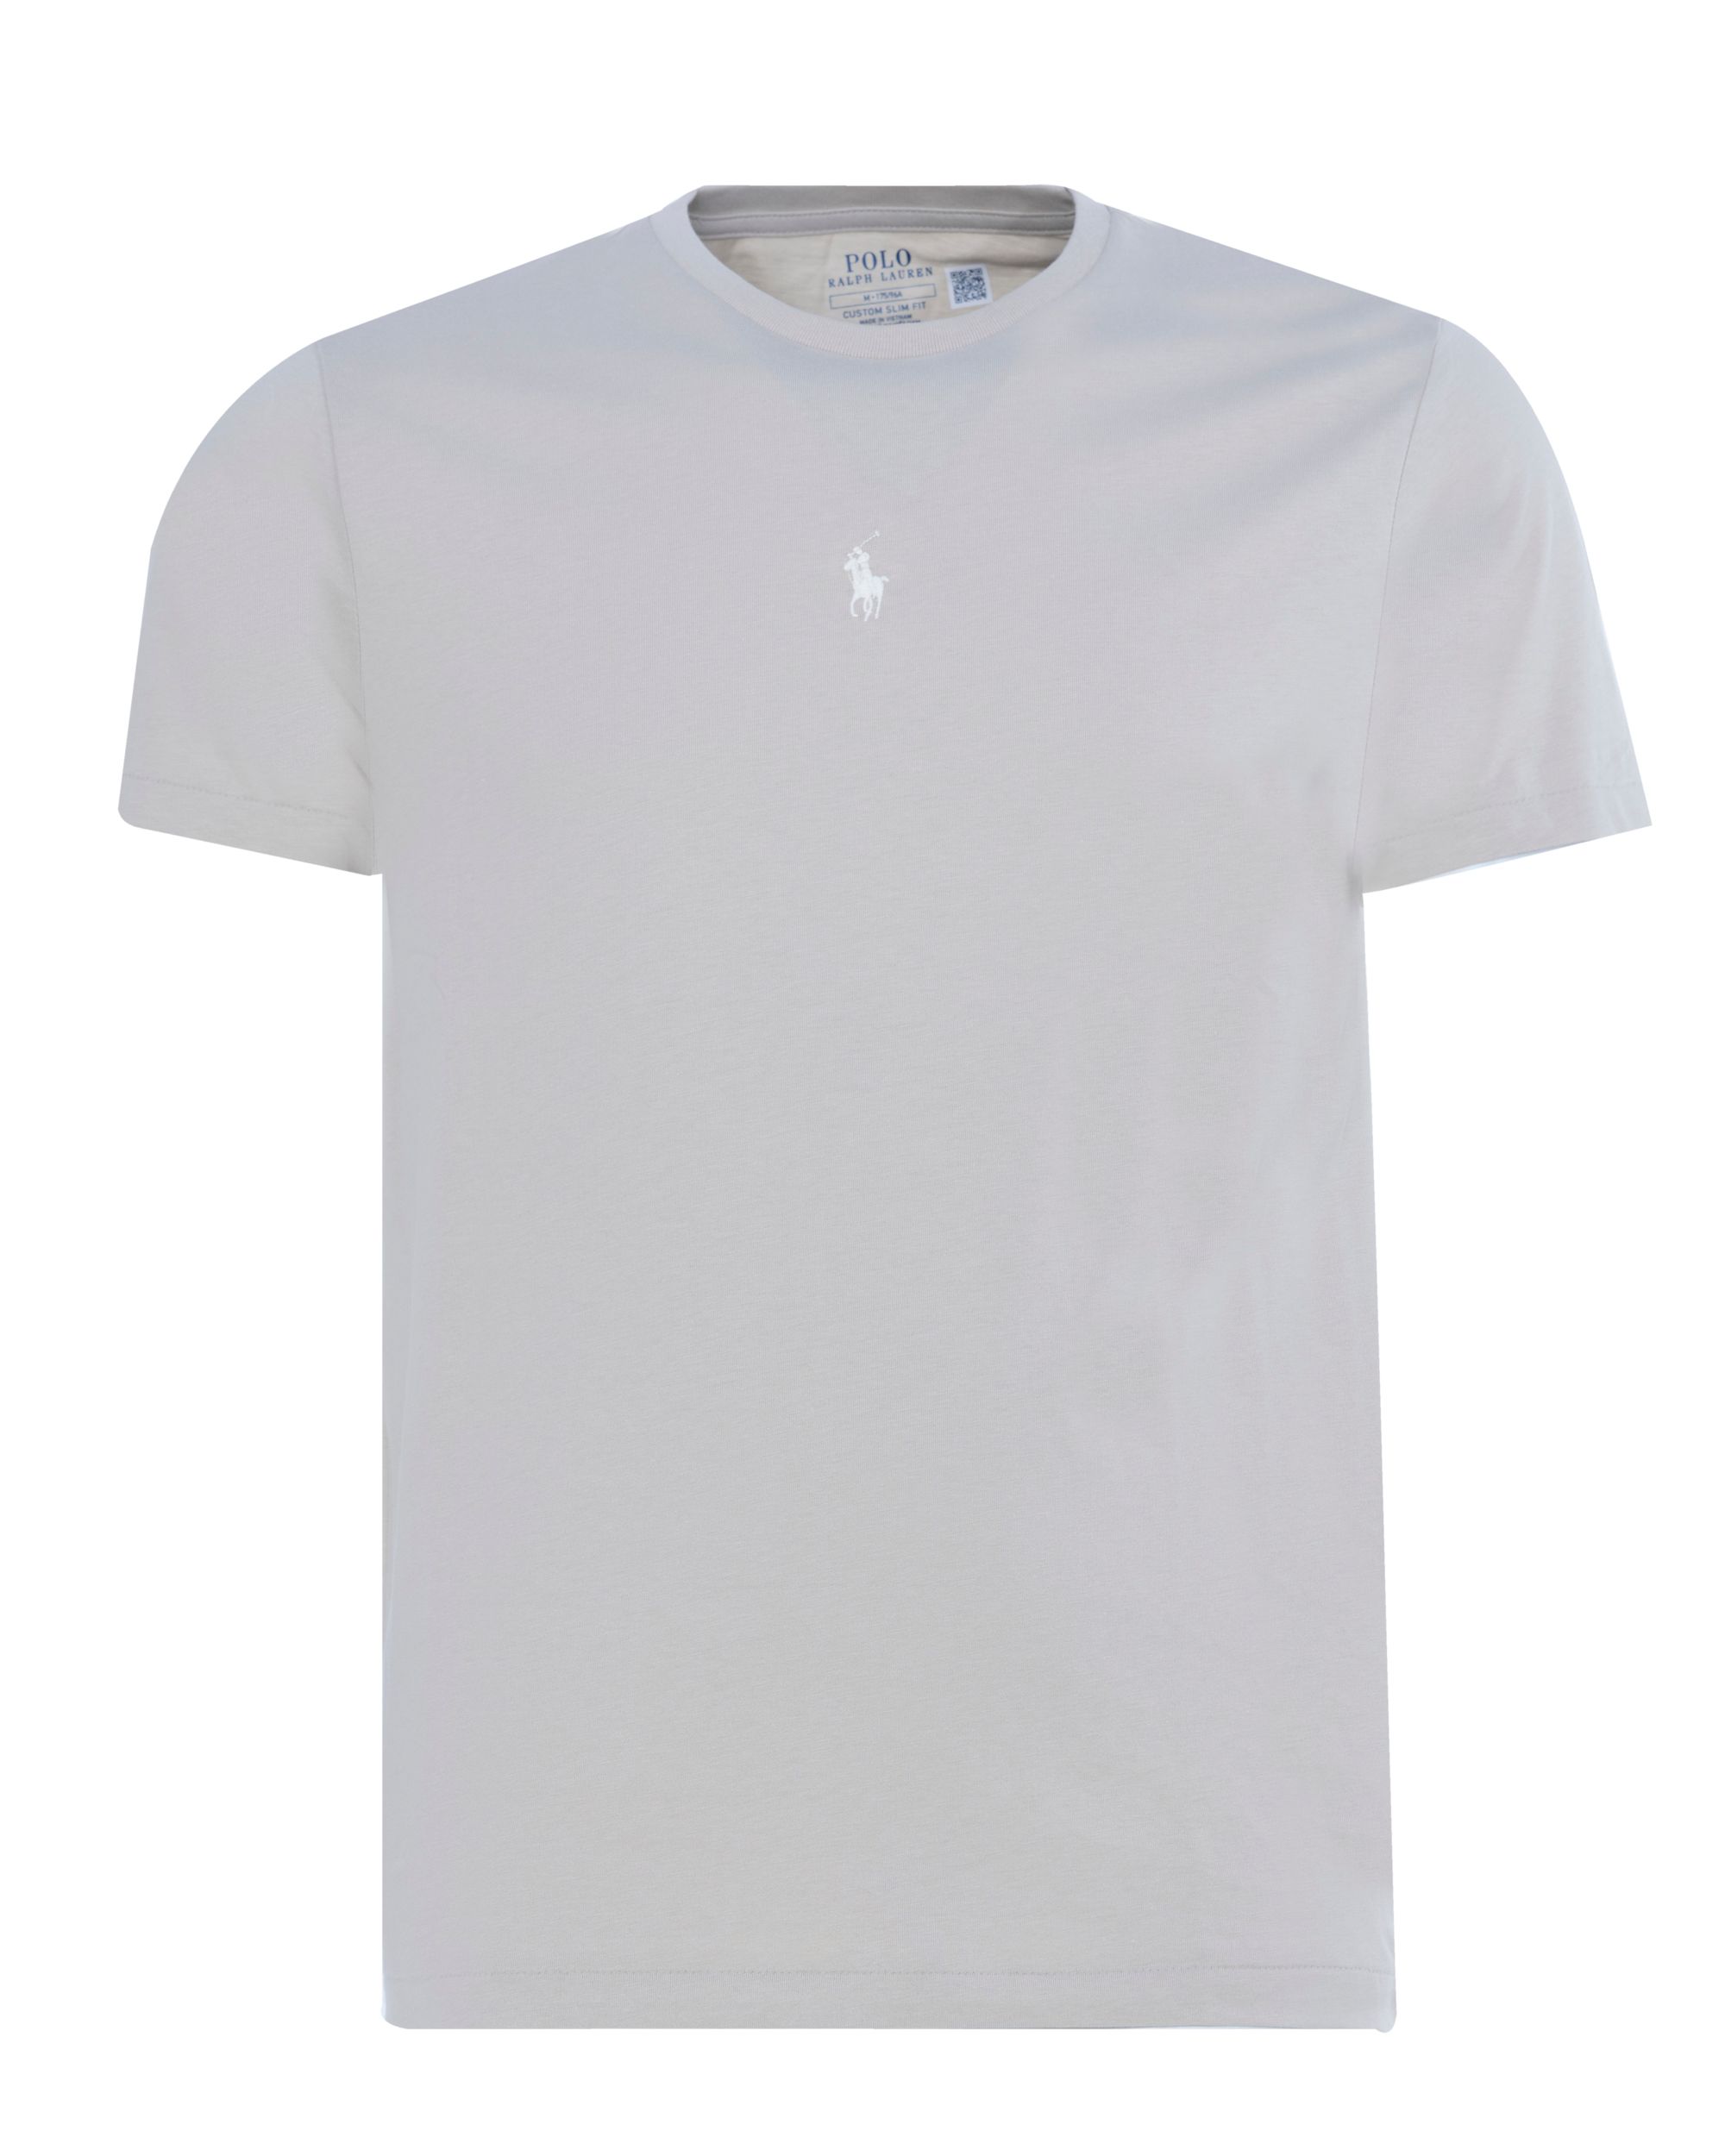 Polo Ralph Lauren - T-shirt KM Grijs 080598-001-L